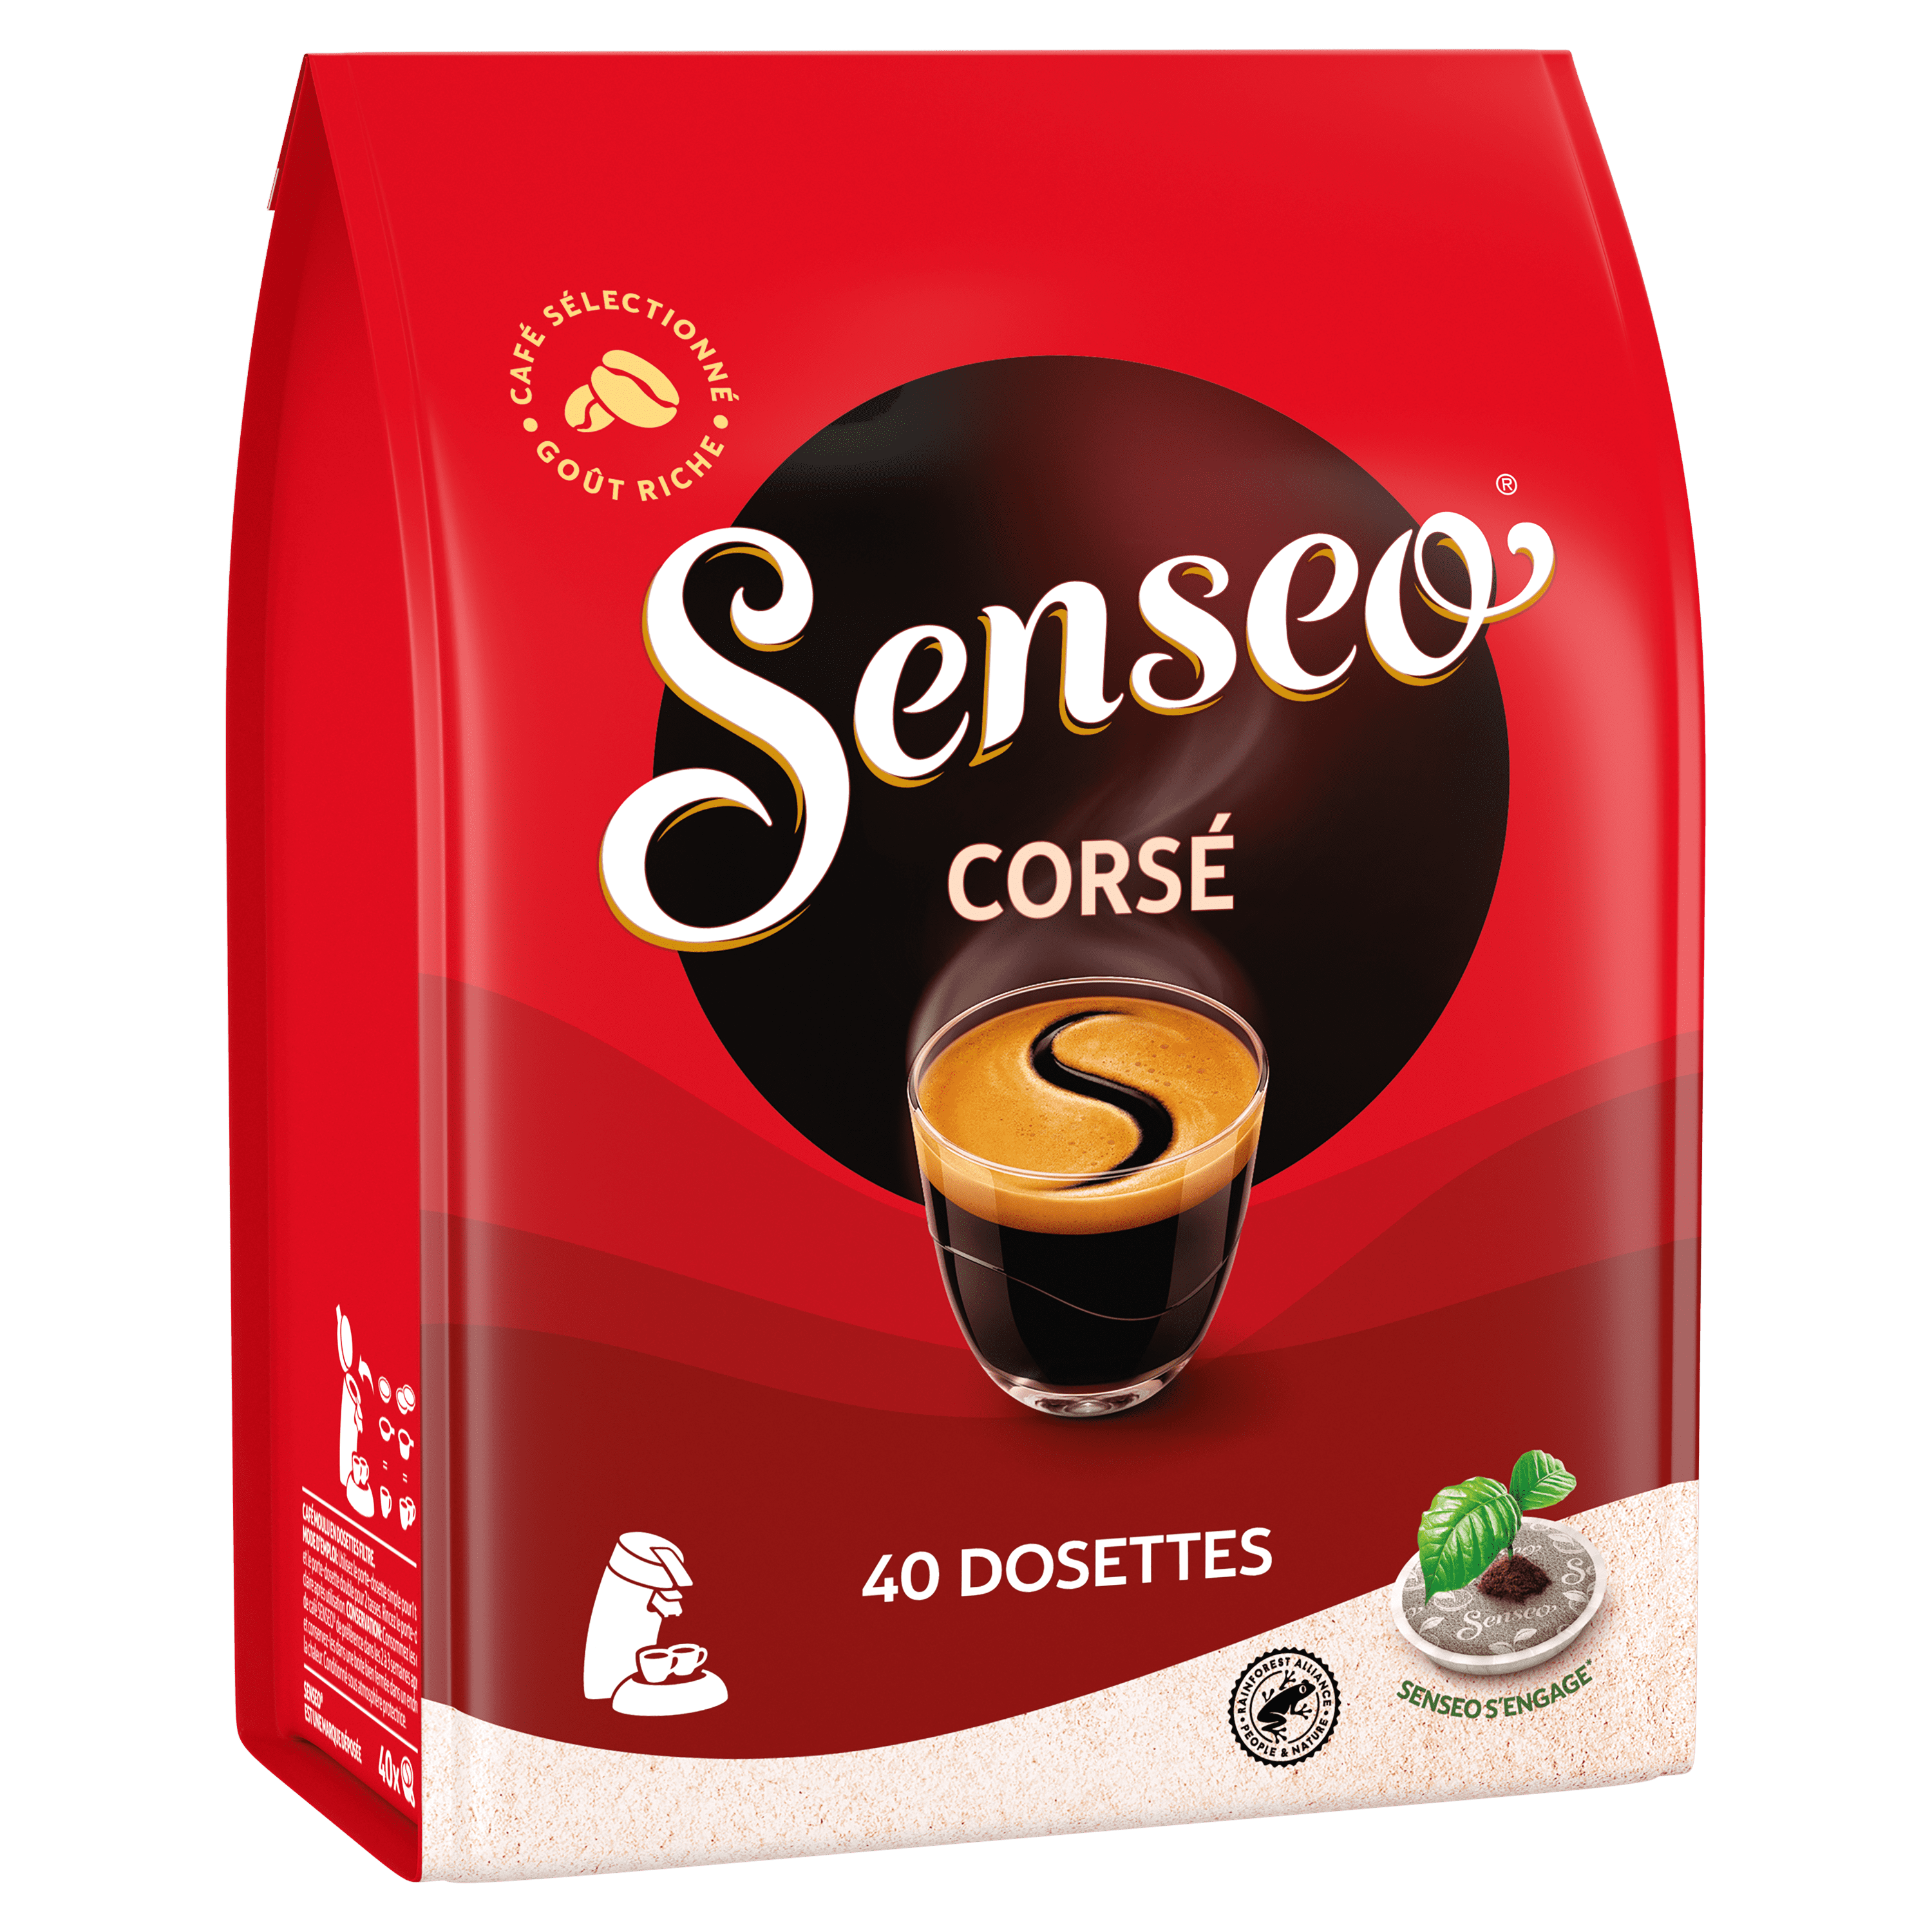 Dosettes de café Senseo Strong - 1 x 36 pcs